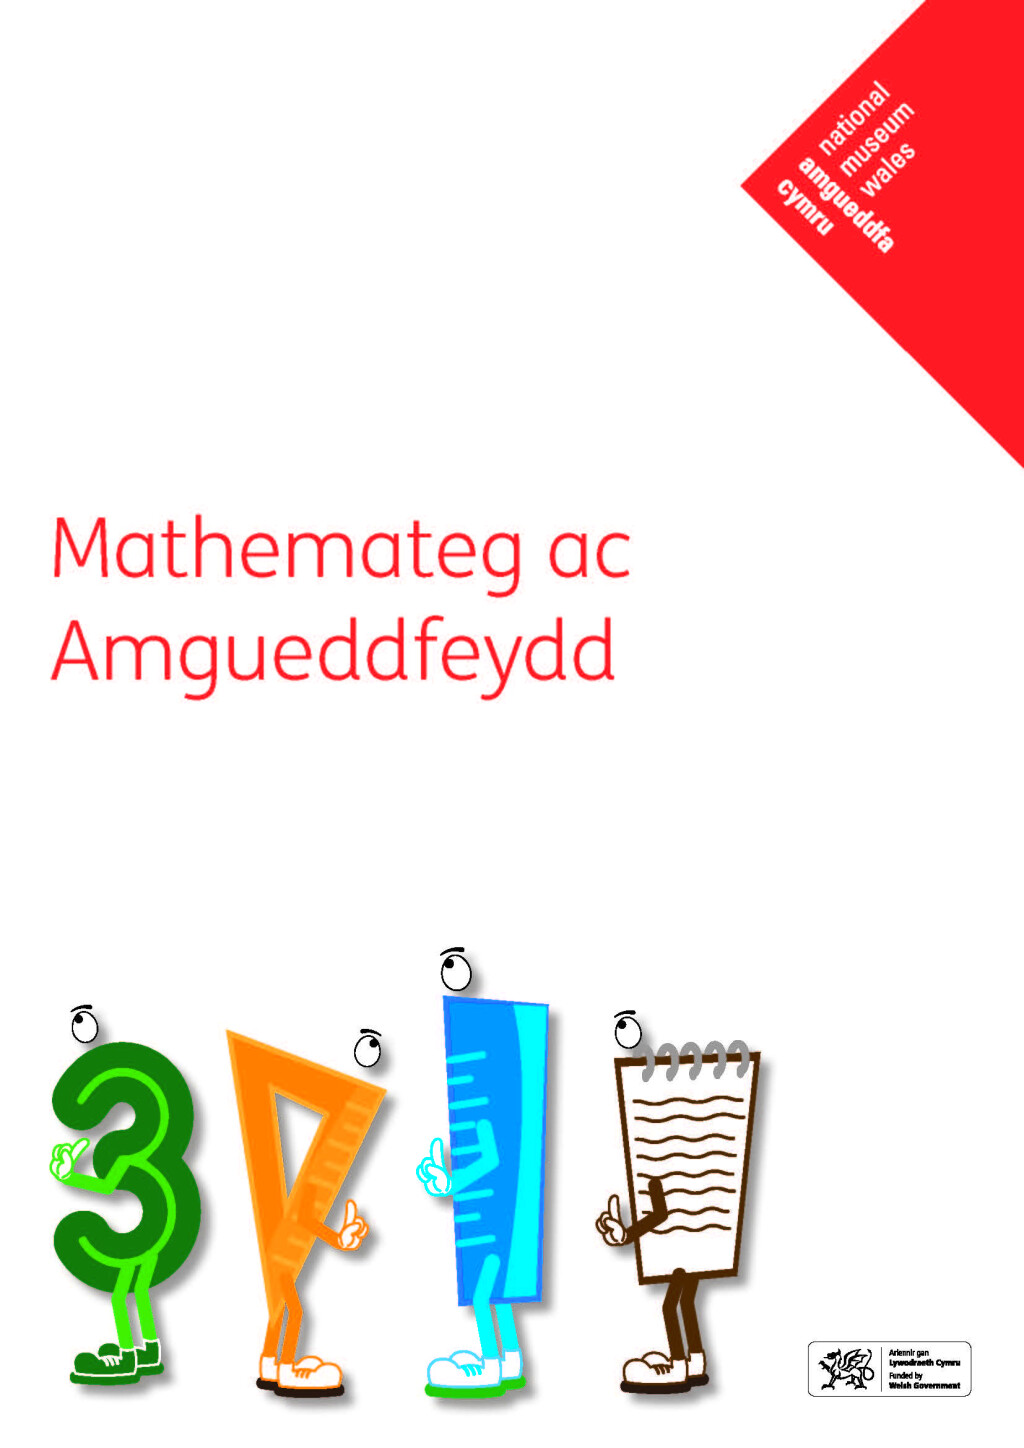 Mathemateg ac Amgueddfeydd